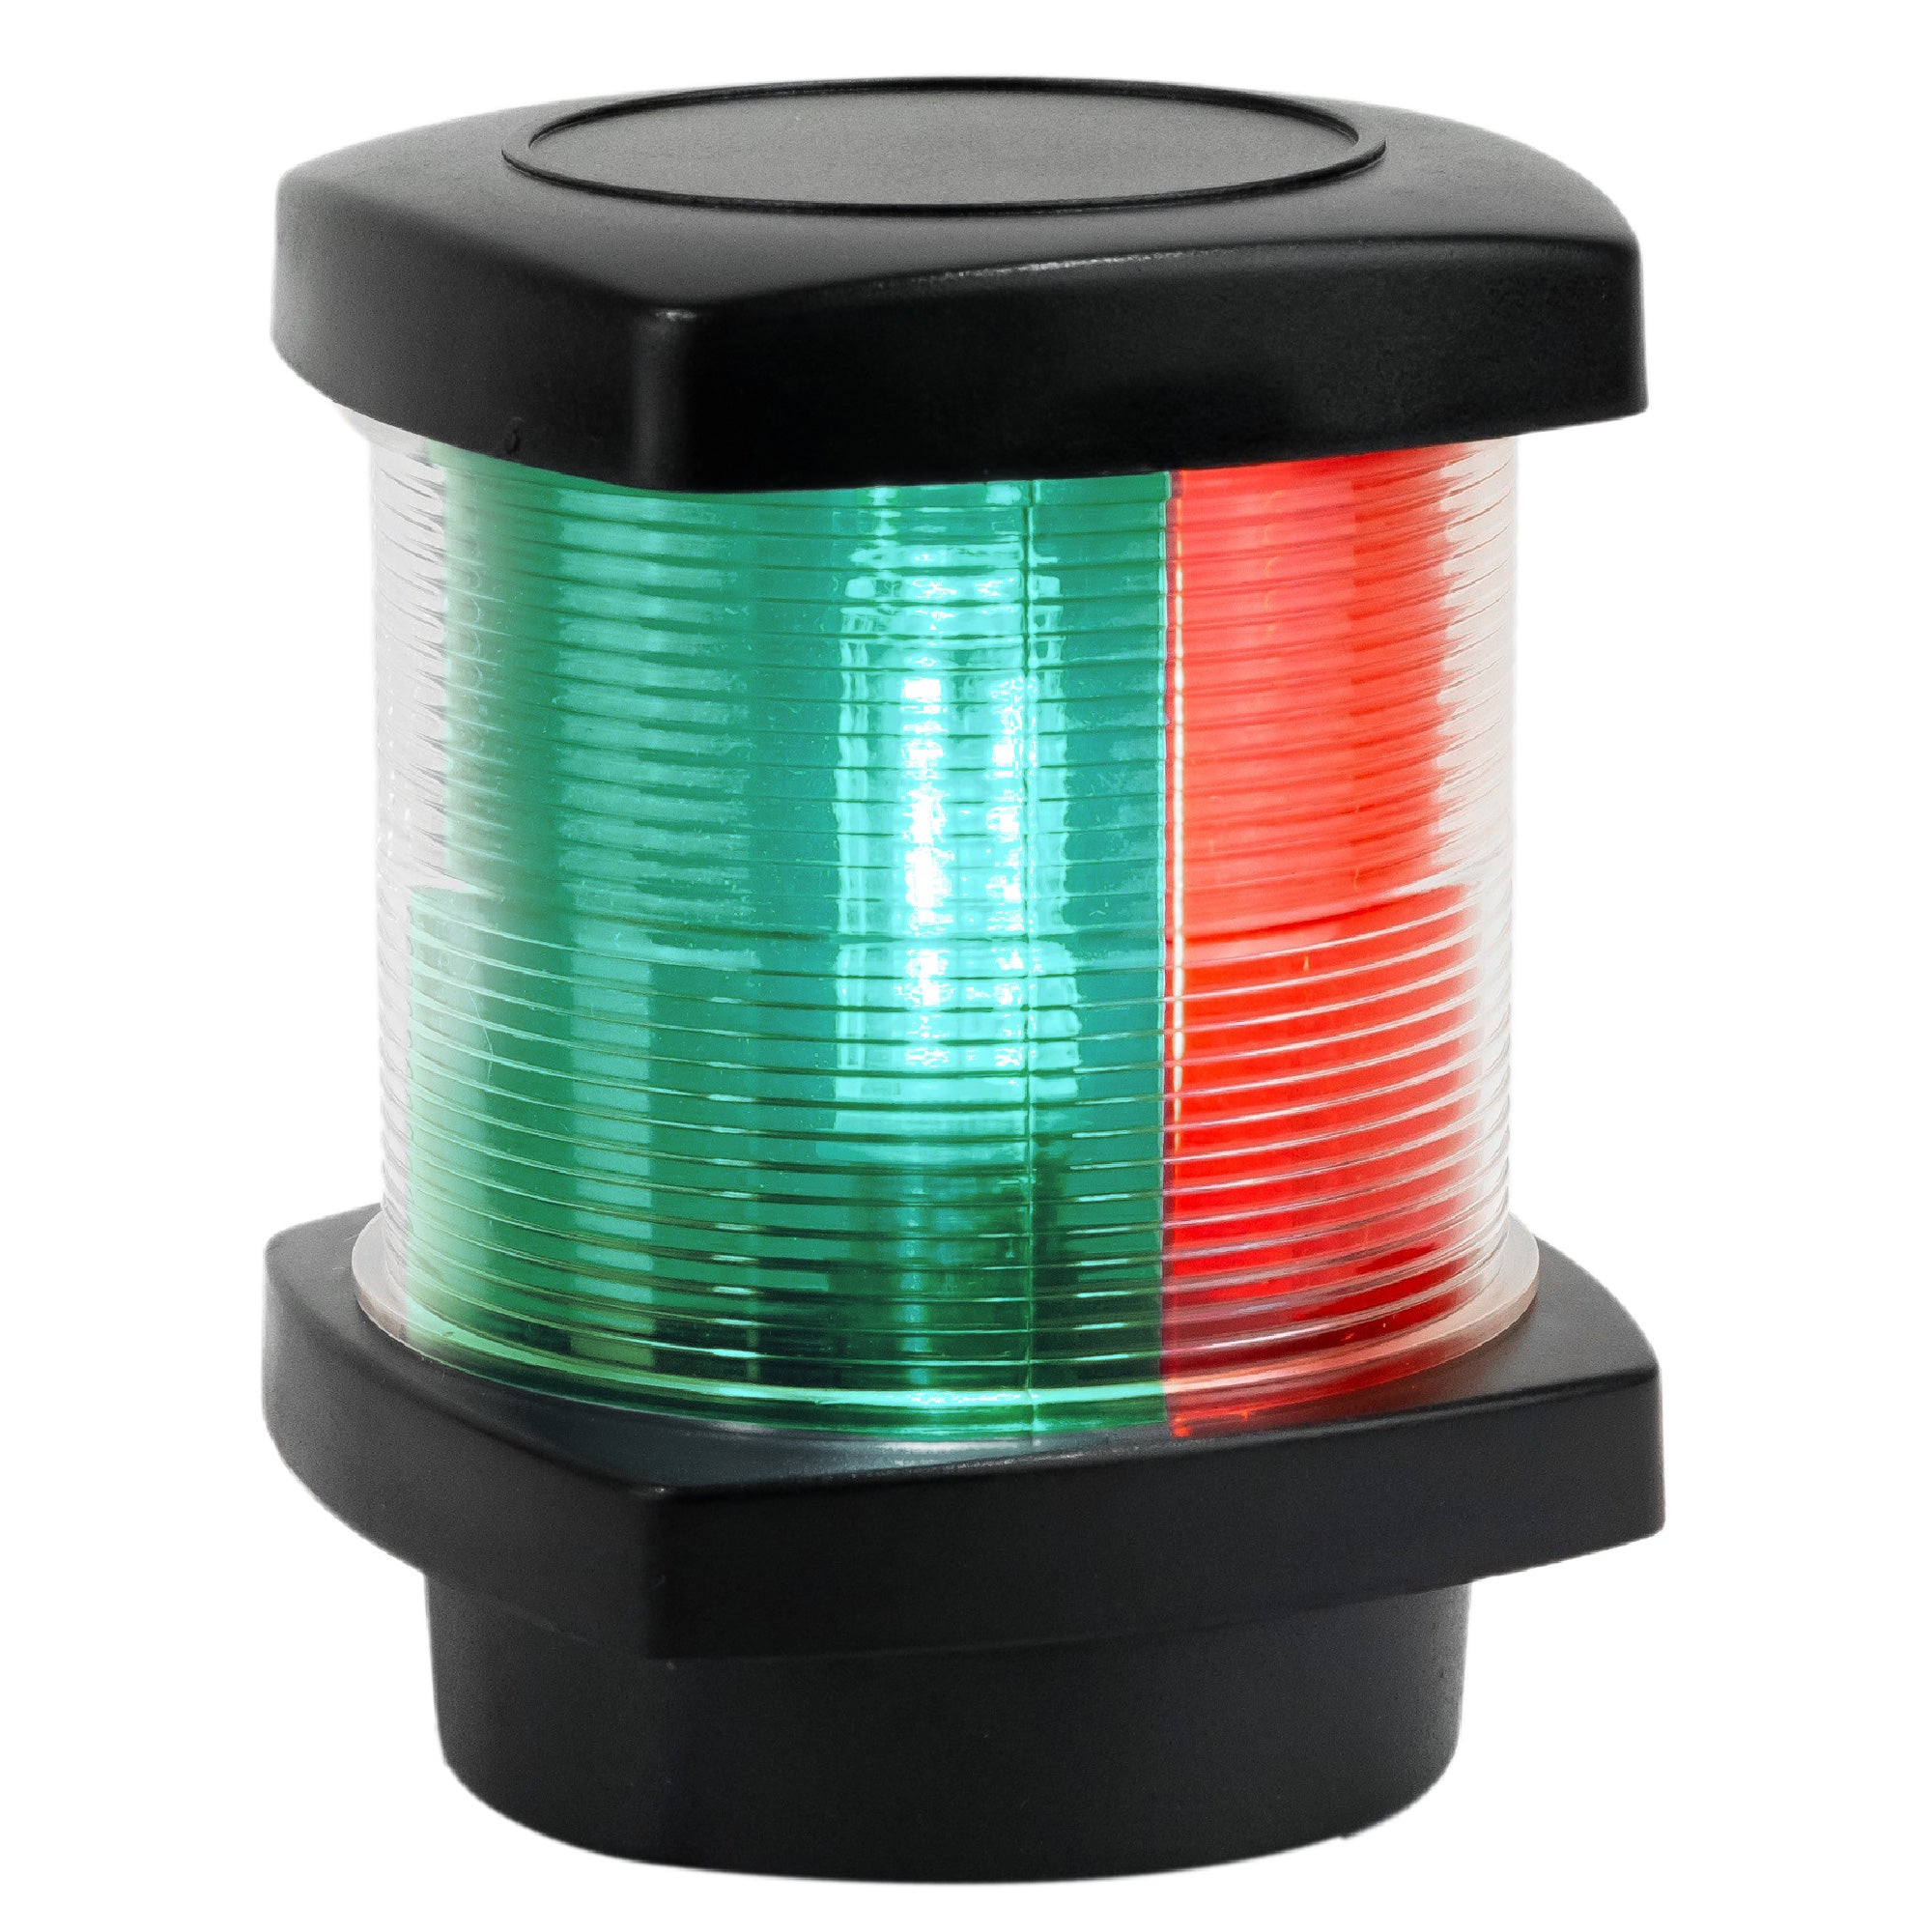 LED Tri-Color Navigation Light, Vertical Mount - FO4684